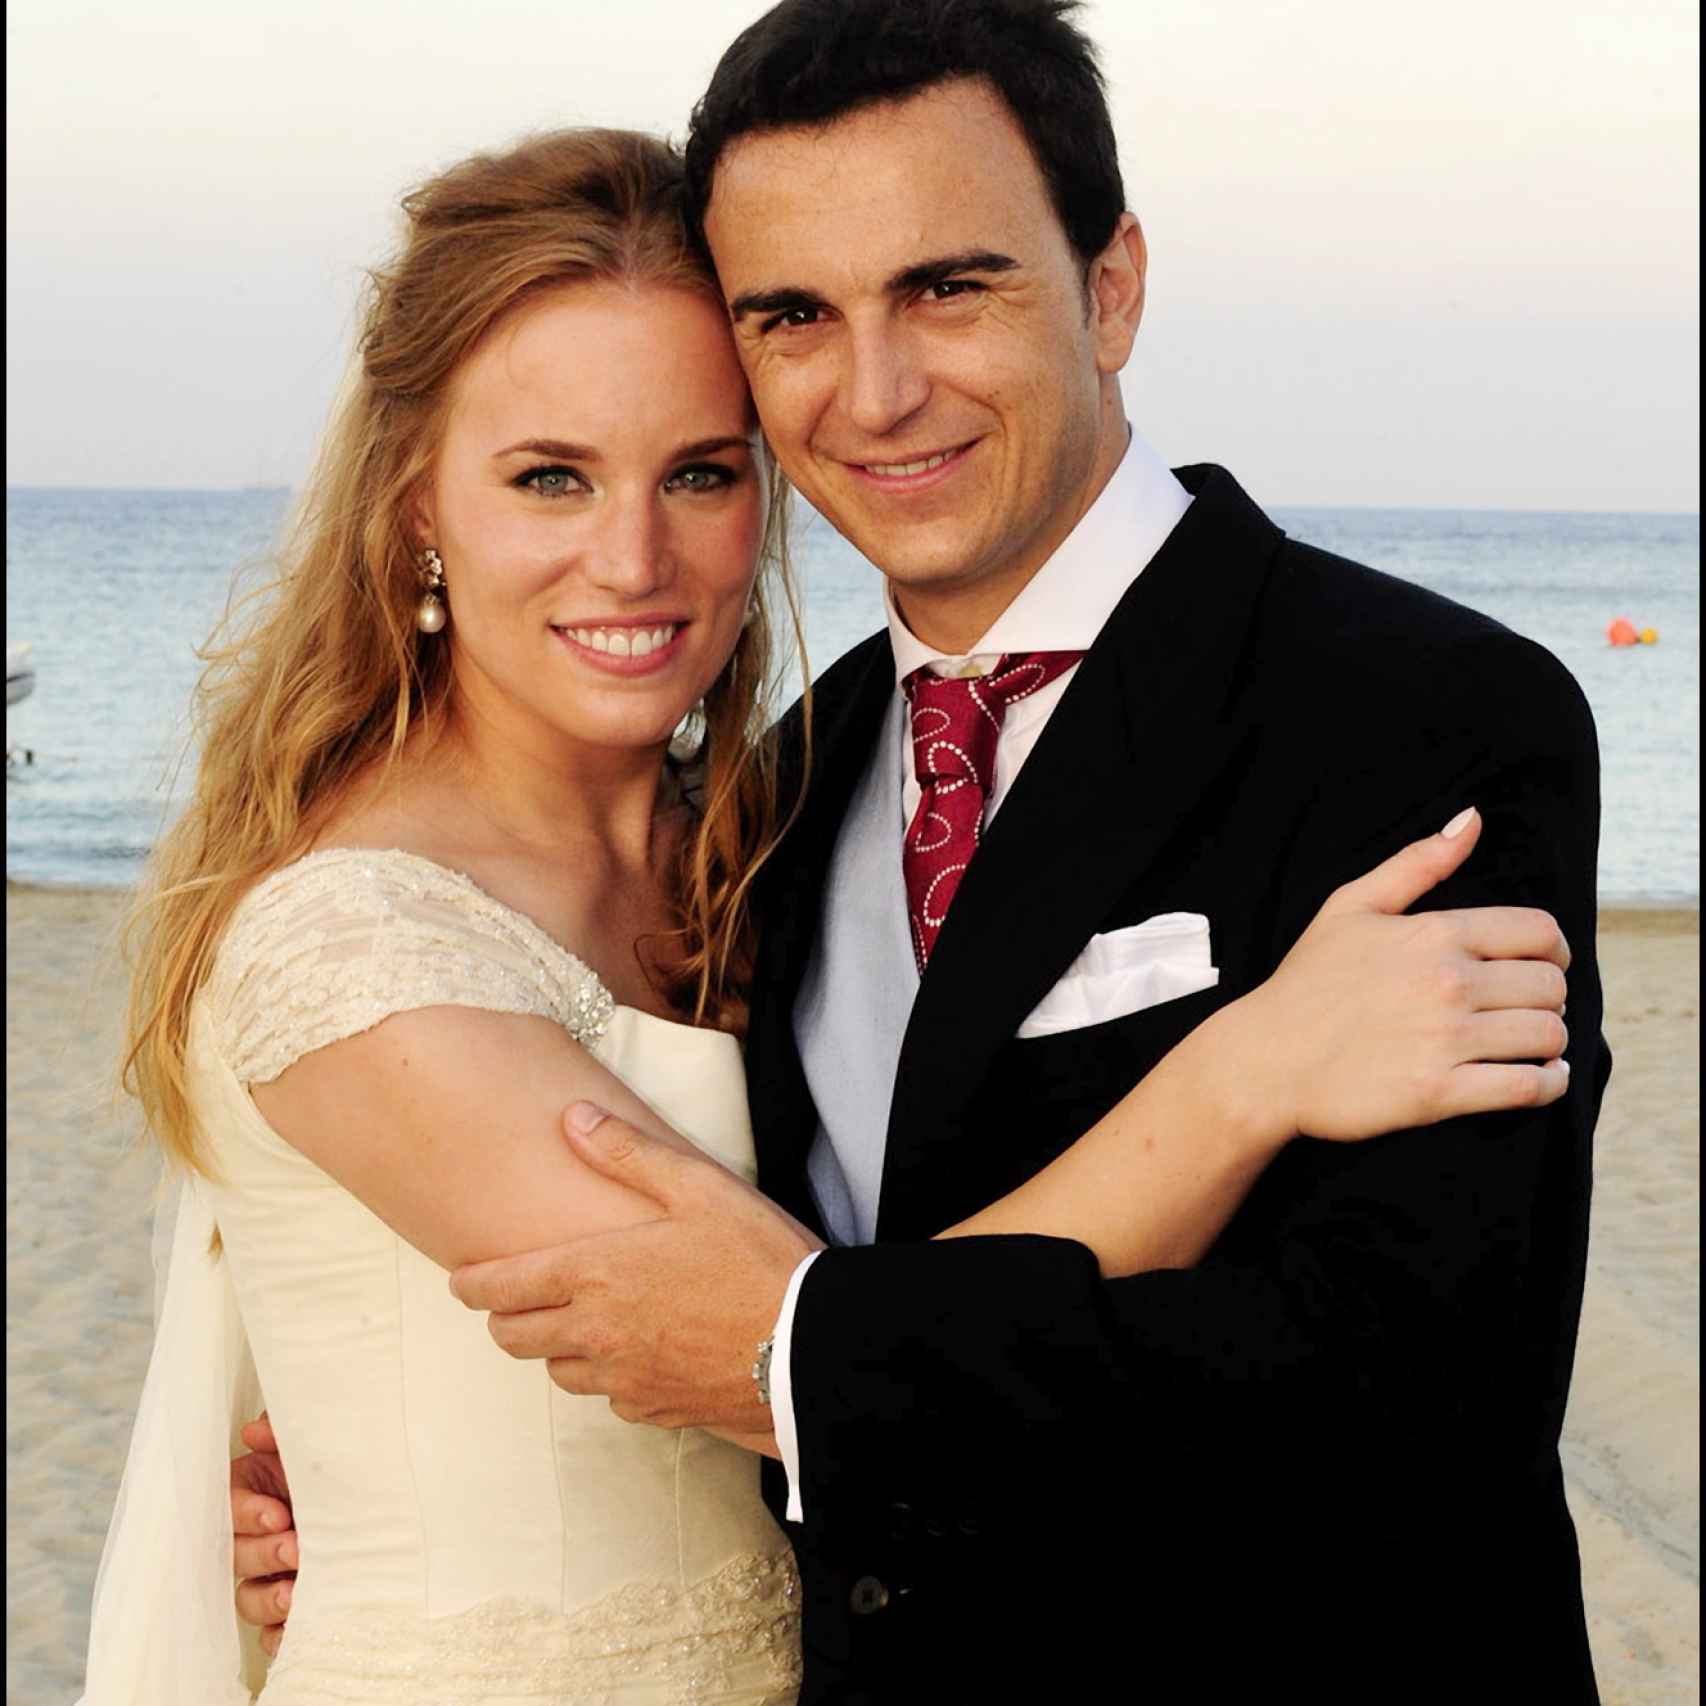 Abel Matutes y Linda Scaperotto se casaron en ibiza en 2009.